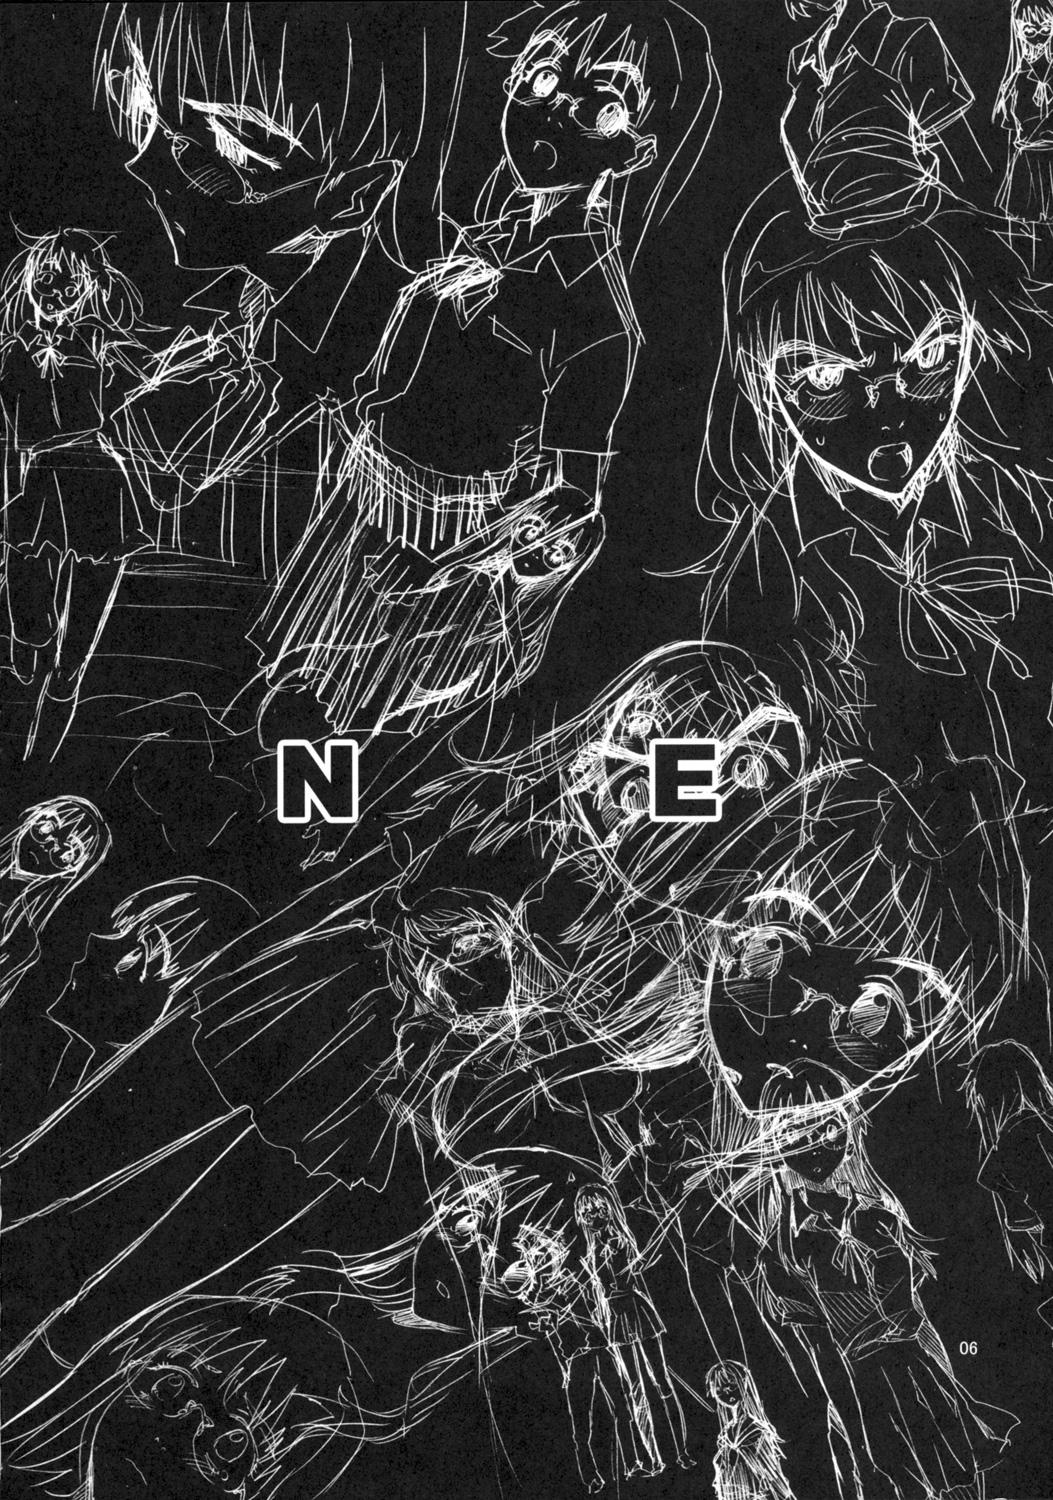 NMNE - Nina Mori No Eroihon 4